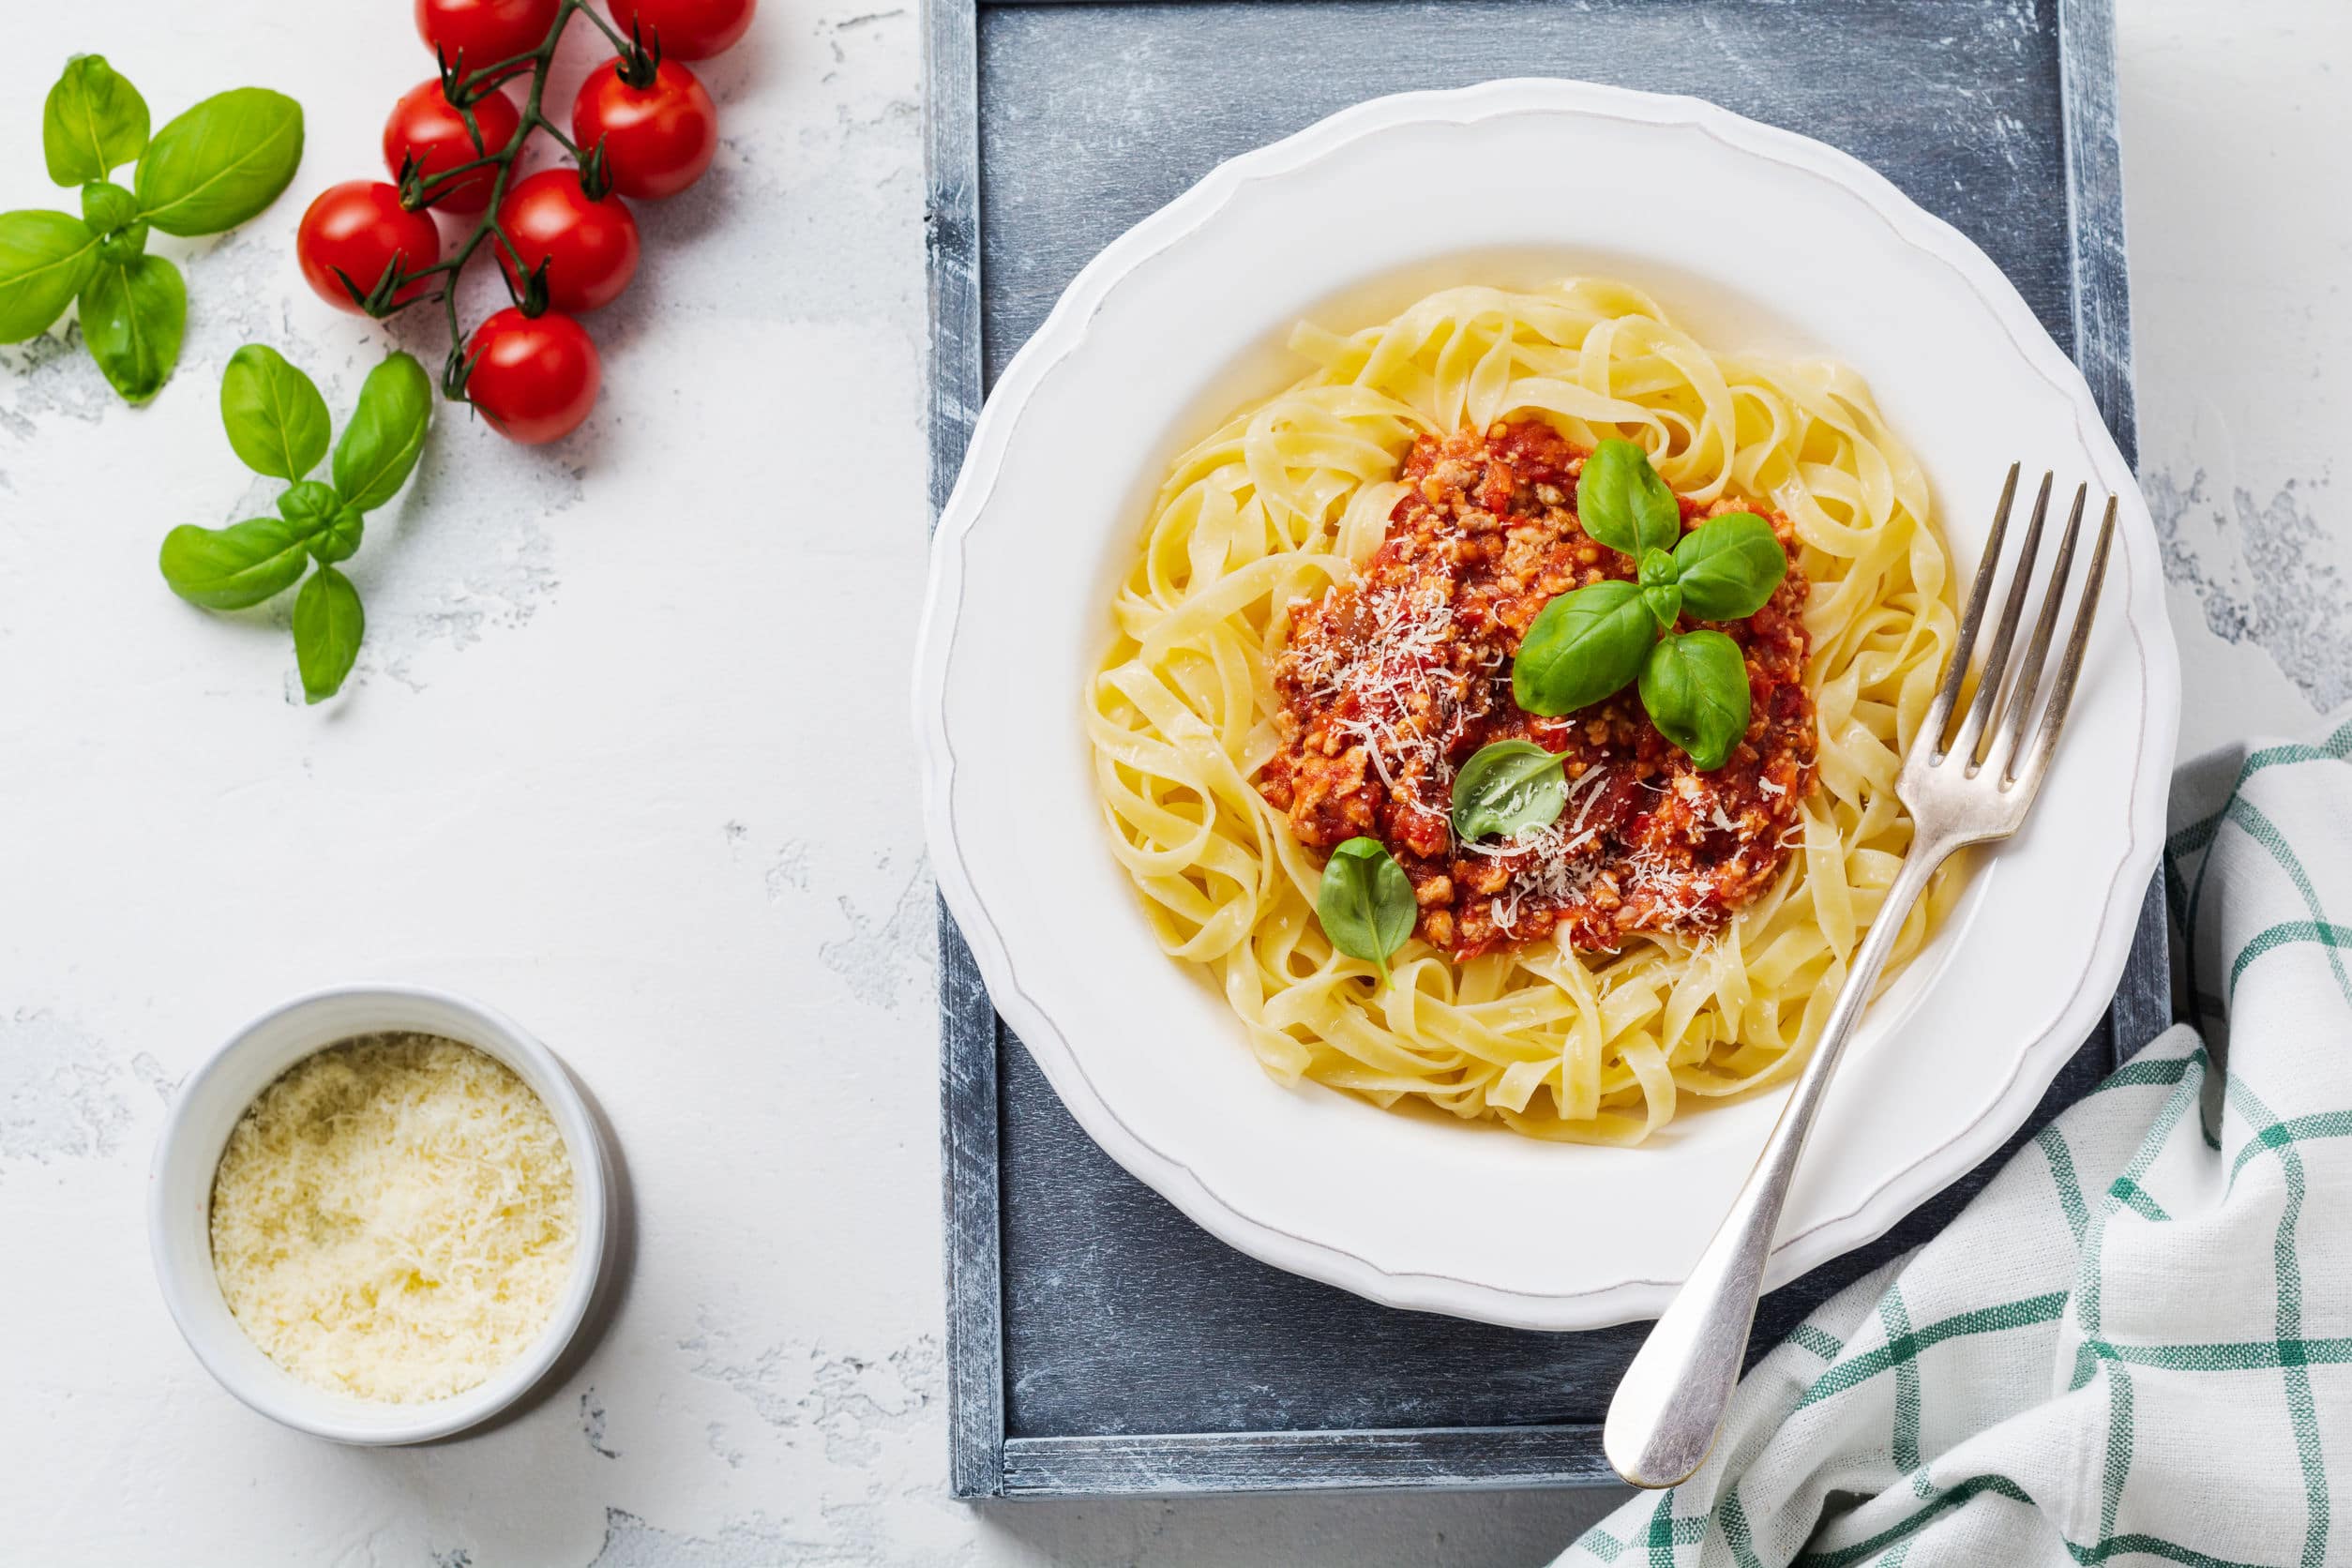 opskrift italiensk spaghetti bolognese pasta spagetthi kødsauce kødsovs opskrift ragu alla bolognese